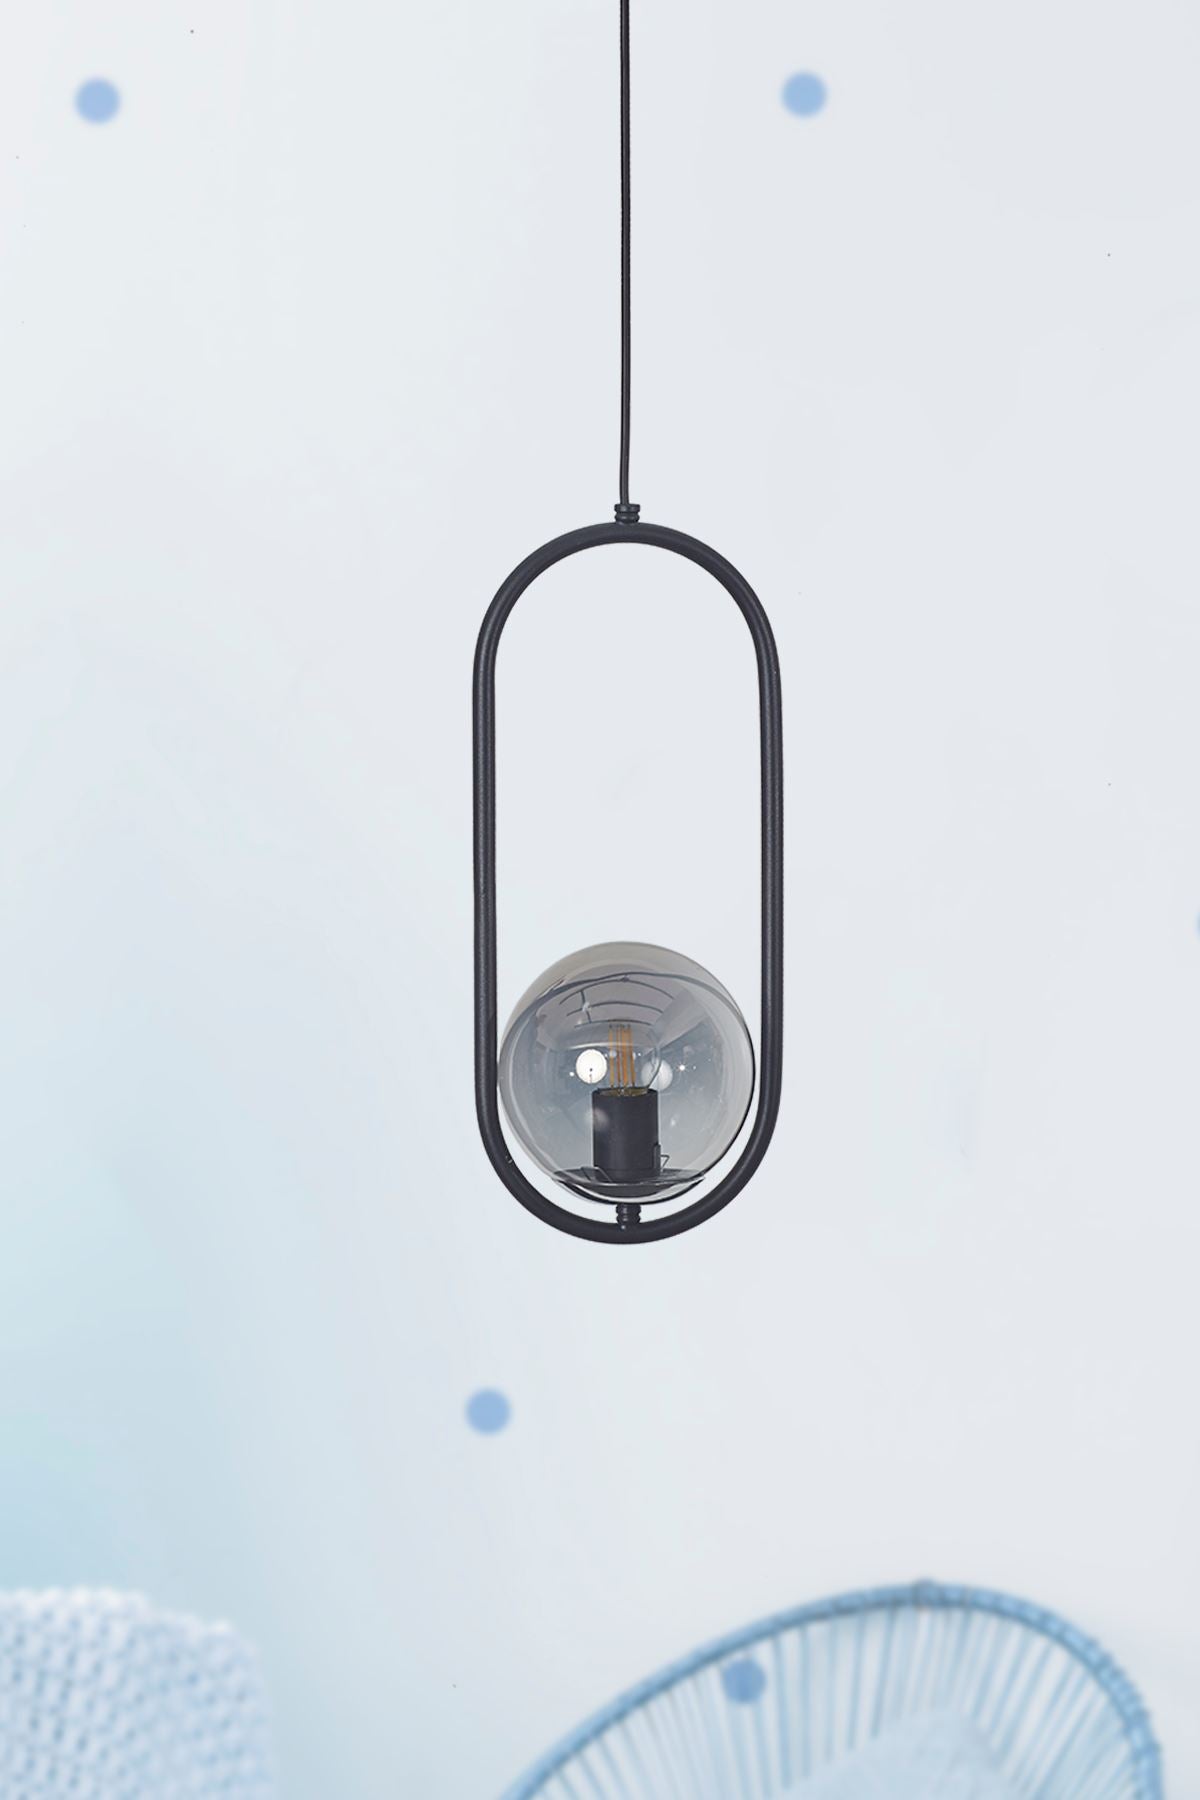 Luzarana Zenga three-part black metal housing smoked glass design luxury hanging lamp